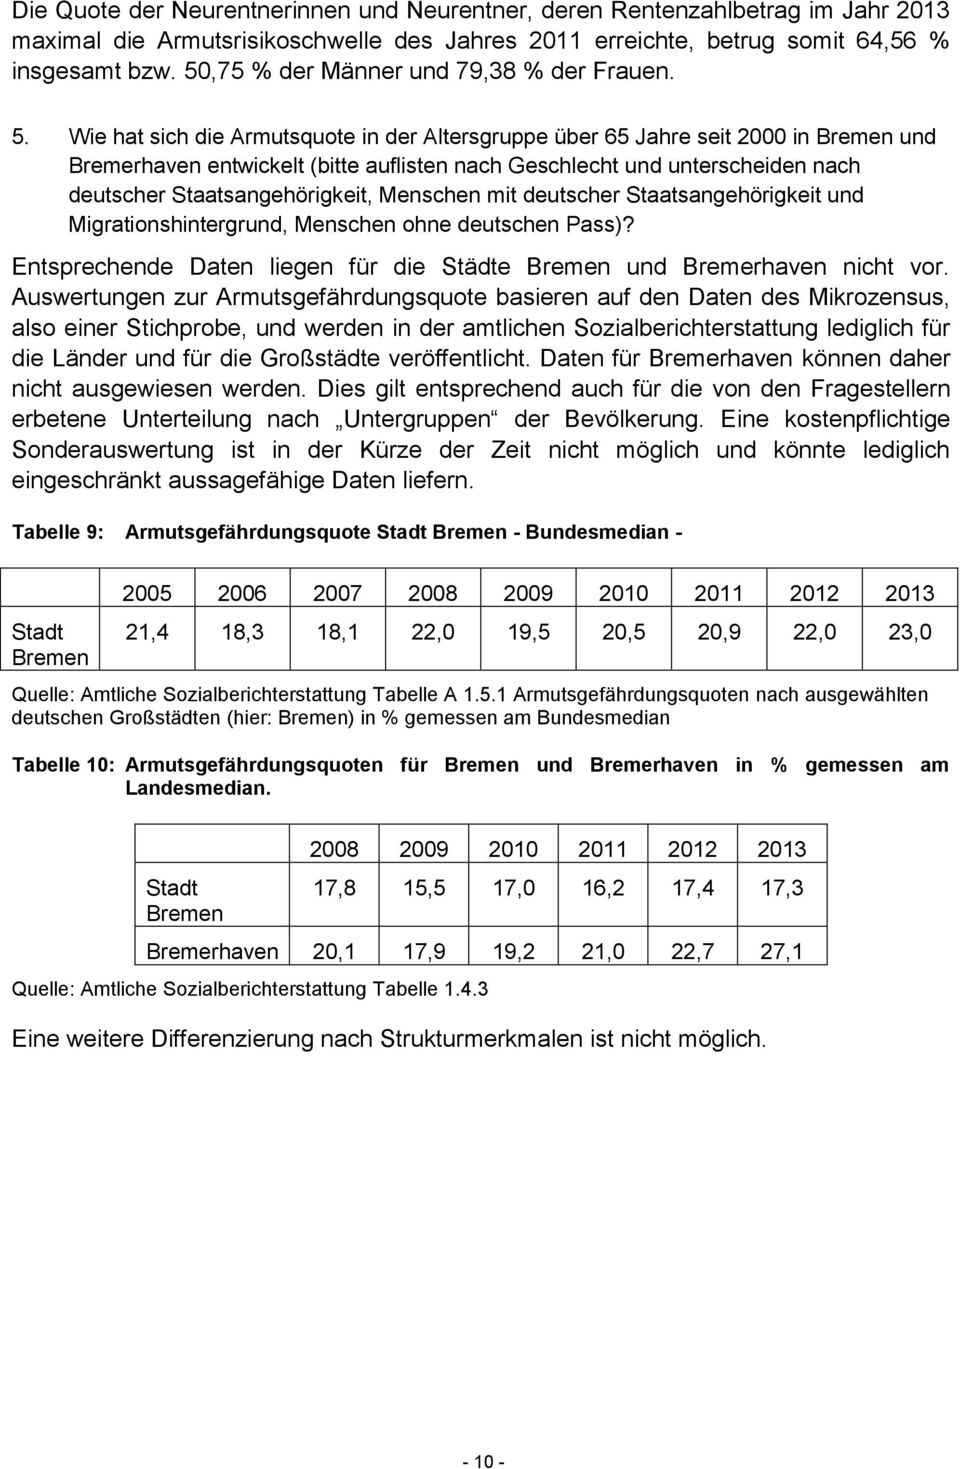 Wie hat sich die Armutsquote in der Altersgruppe über 65 Jahre seit 2000 in Bremen und Bremerhaven entwickelt (bitte auflisten nach Geschlecht und unterscheiden nach deutscher Staatsangehörigkeit,